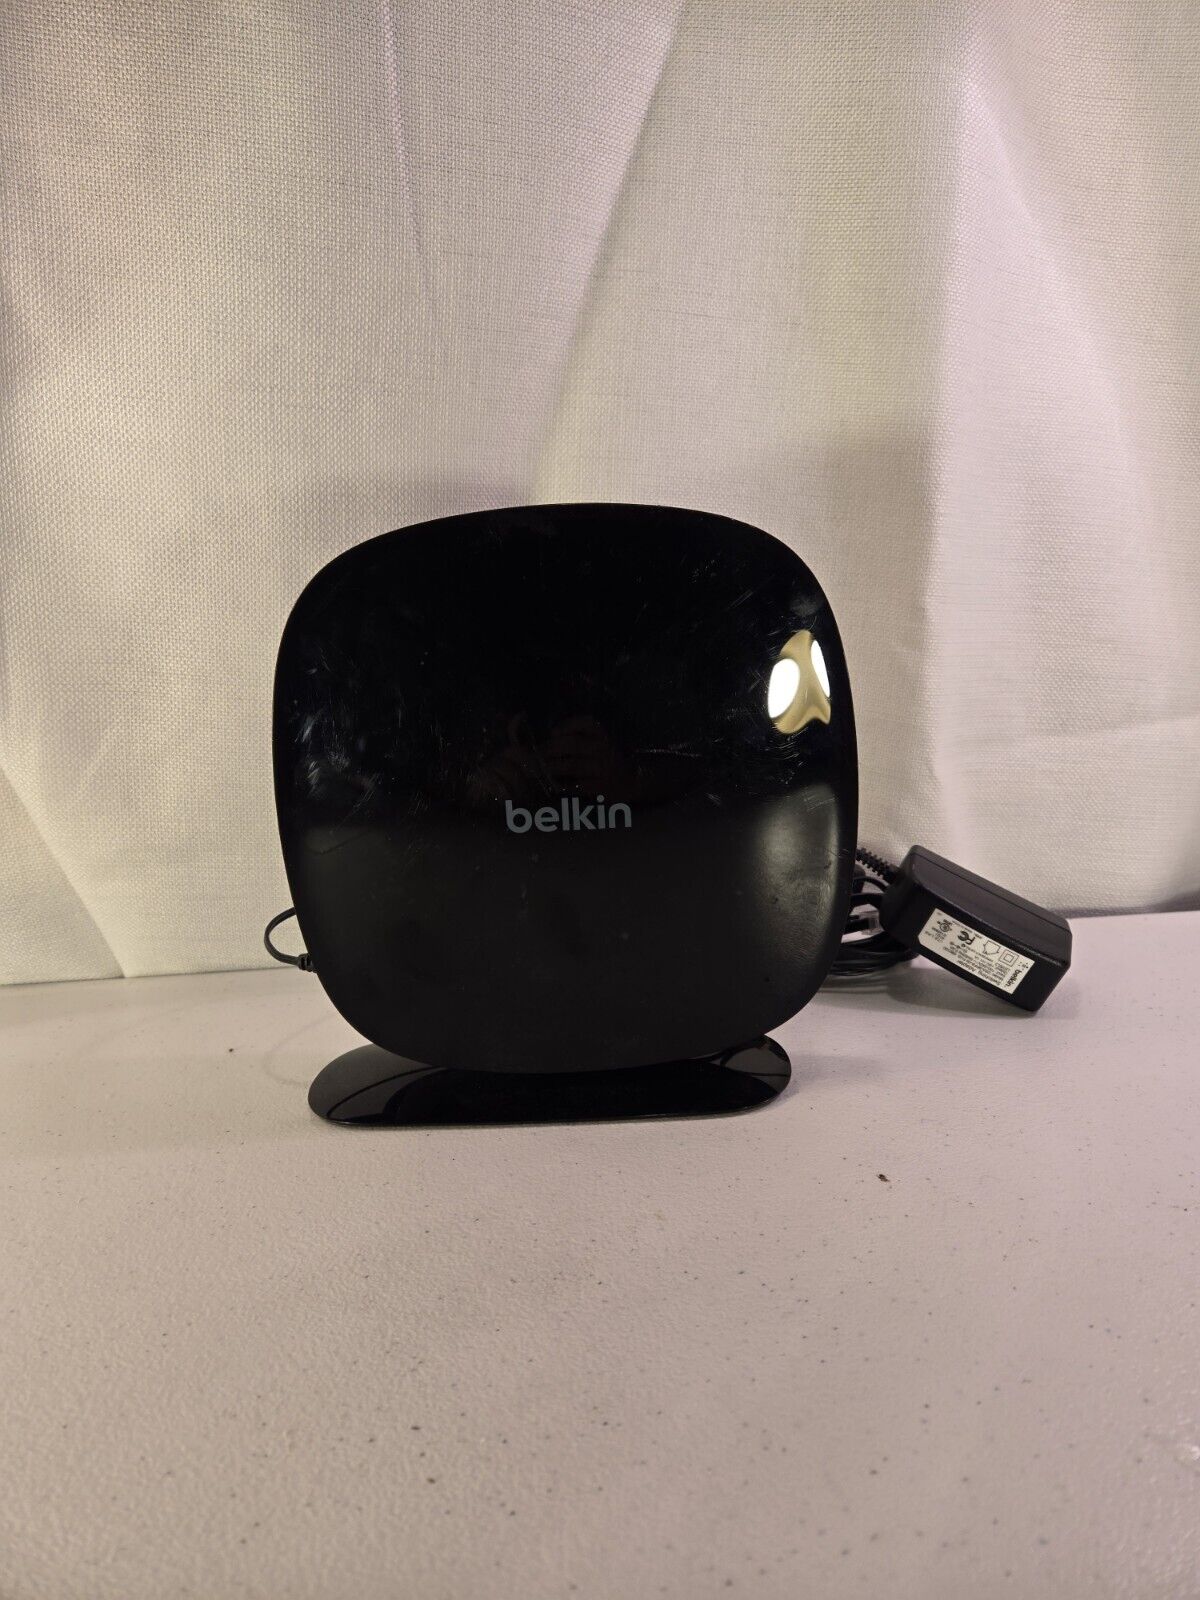 Belkin AC 1200 DB Wi-Fi Router